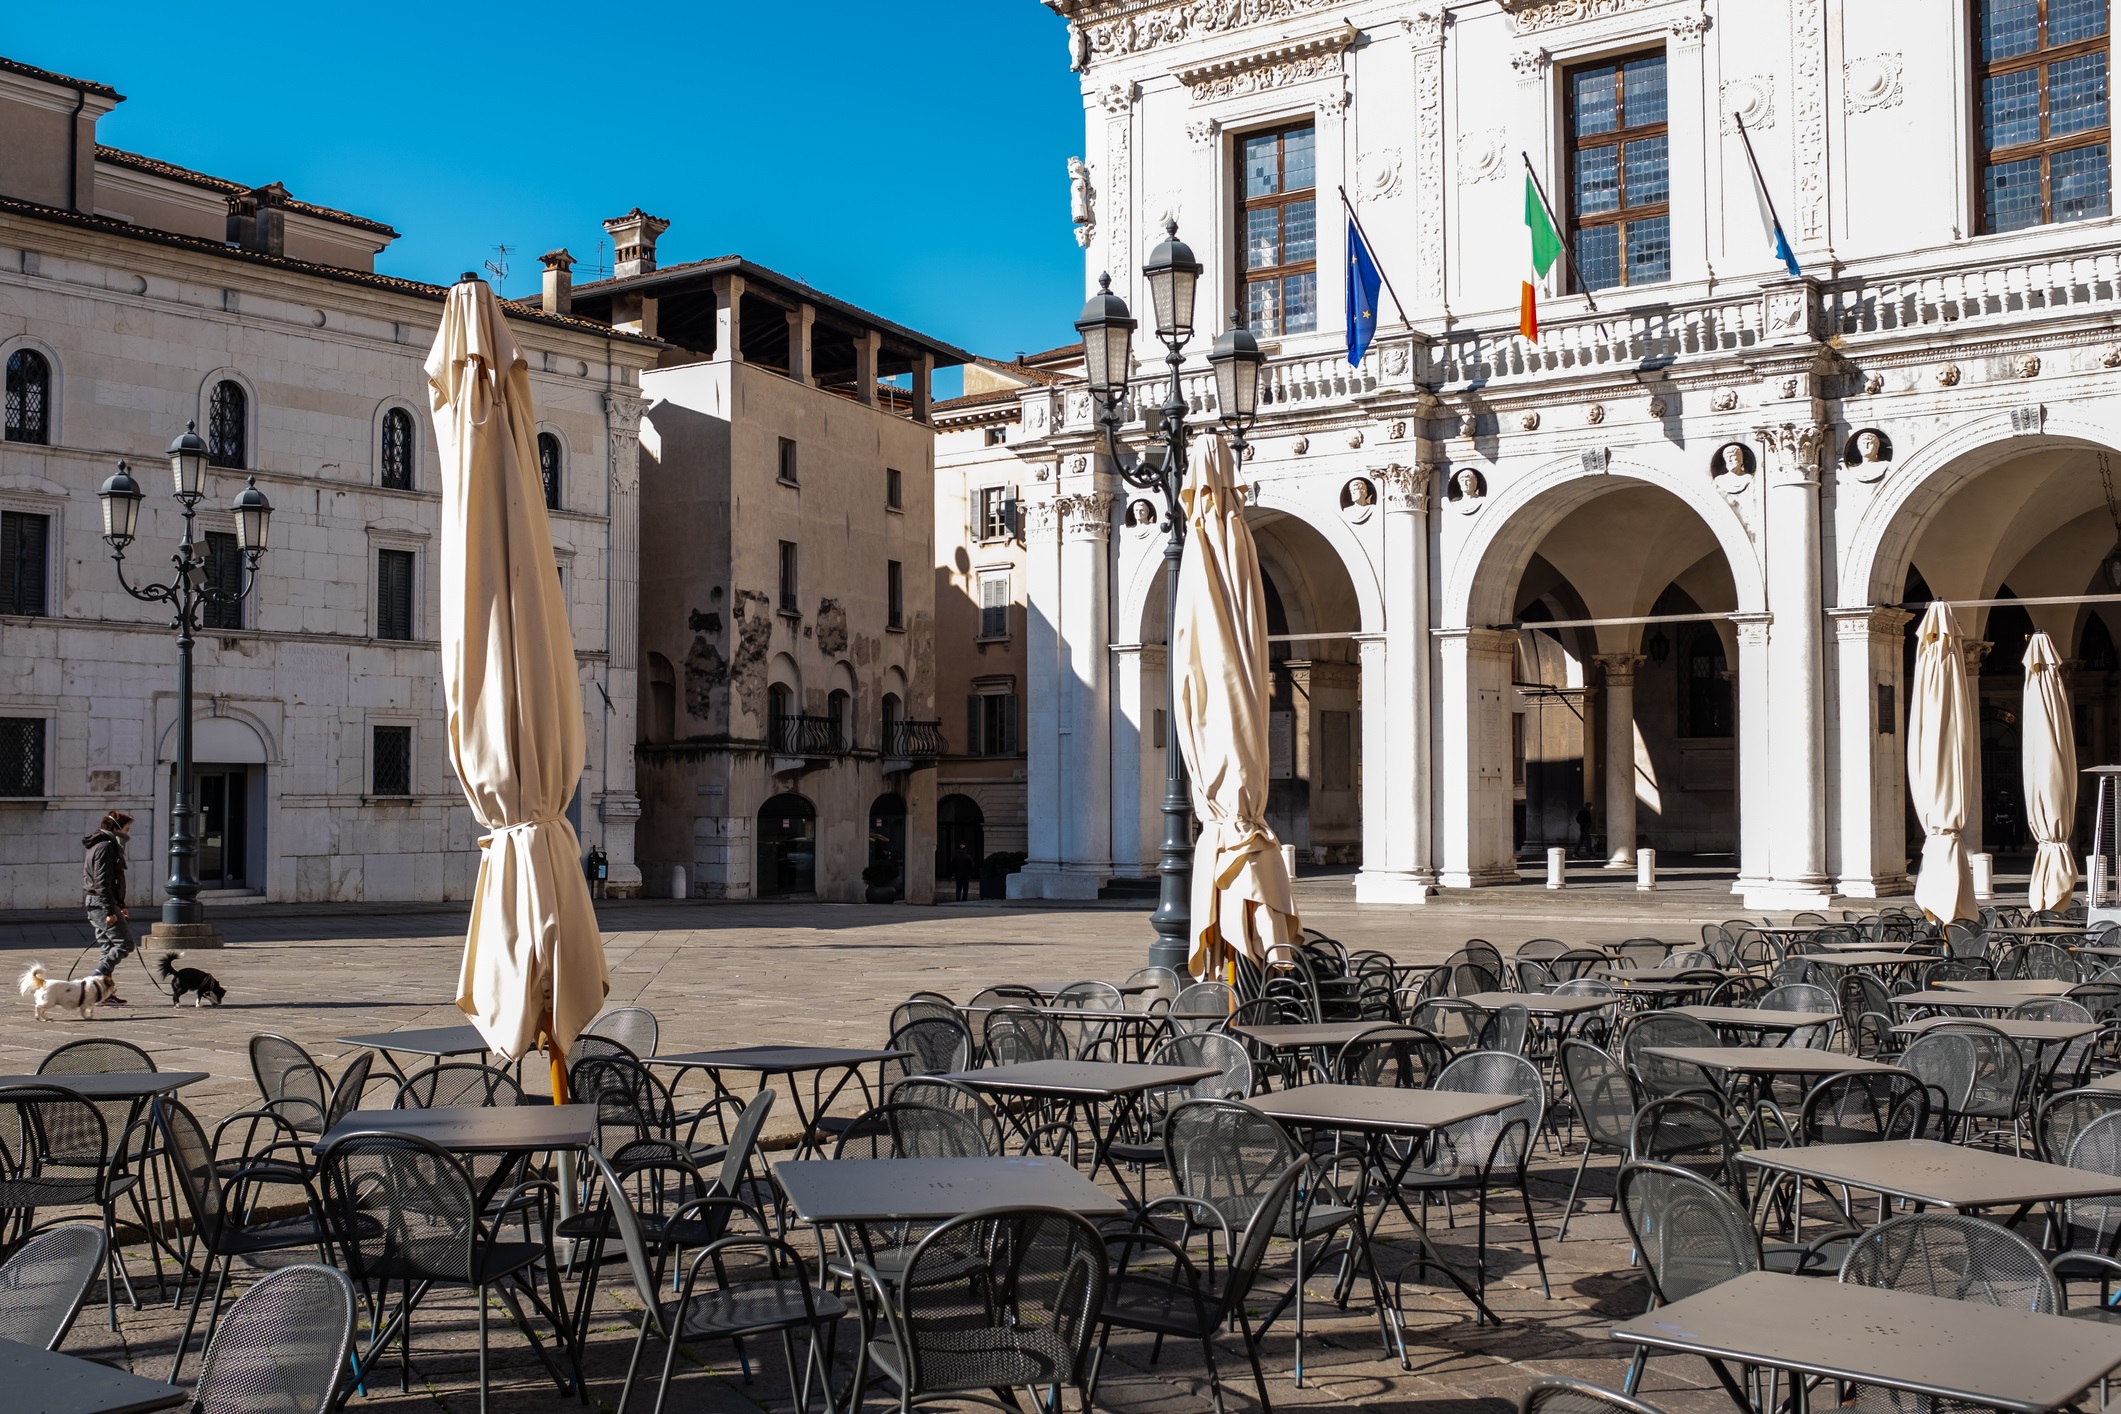 The life under Italy's coronavirus lockdown. Piazza della Loggia (Loggia Square) in Brescia, Lombardy